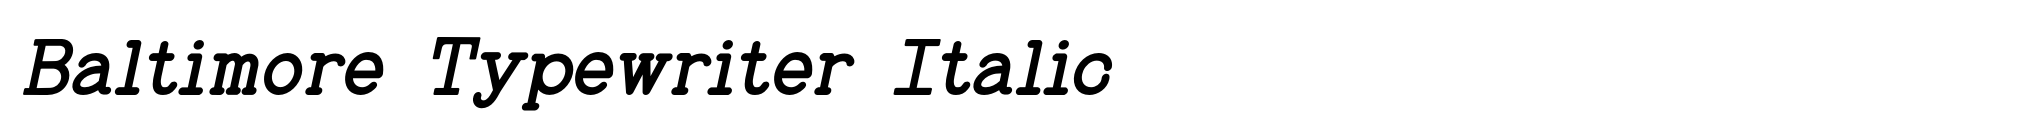 Baltimore Typewriter Italic image